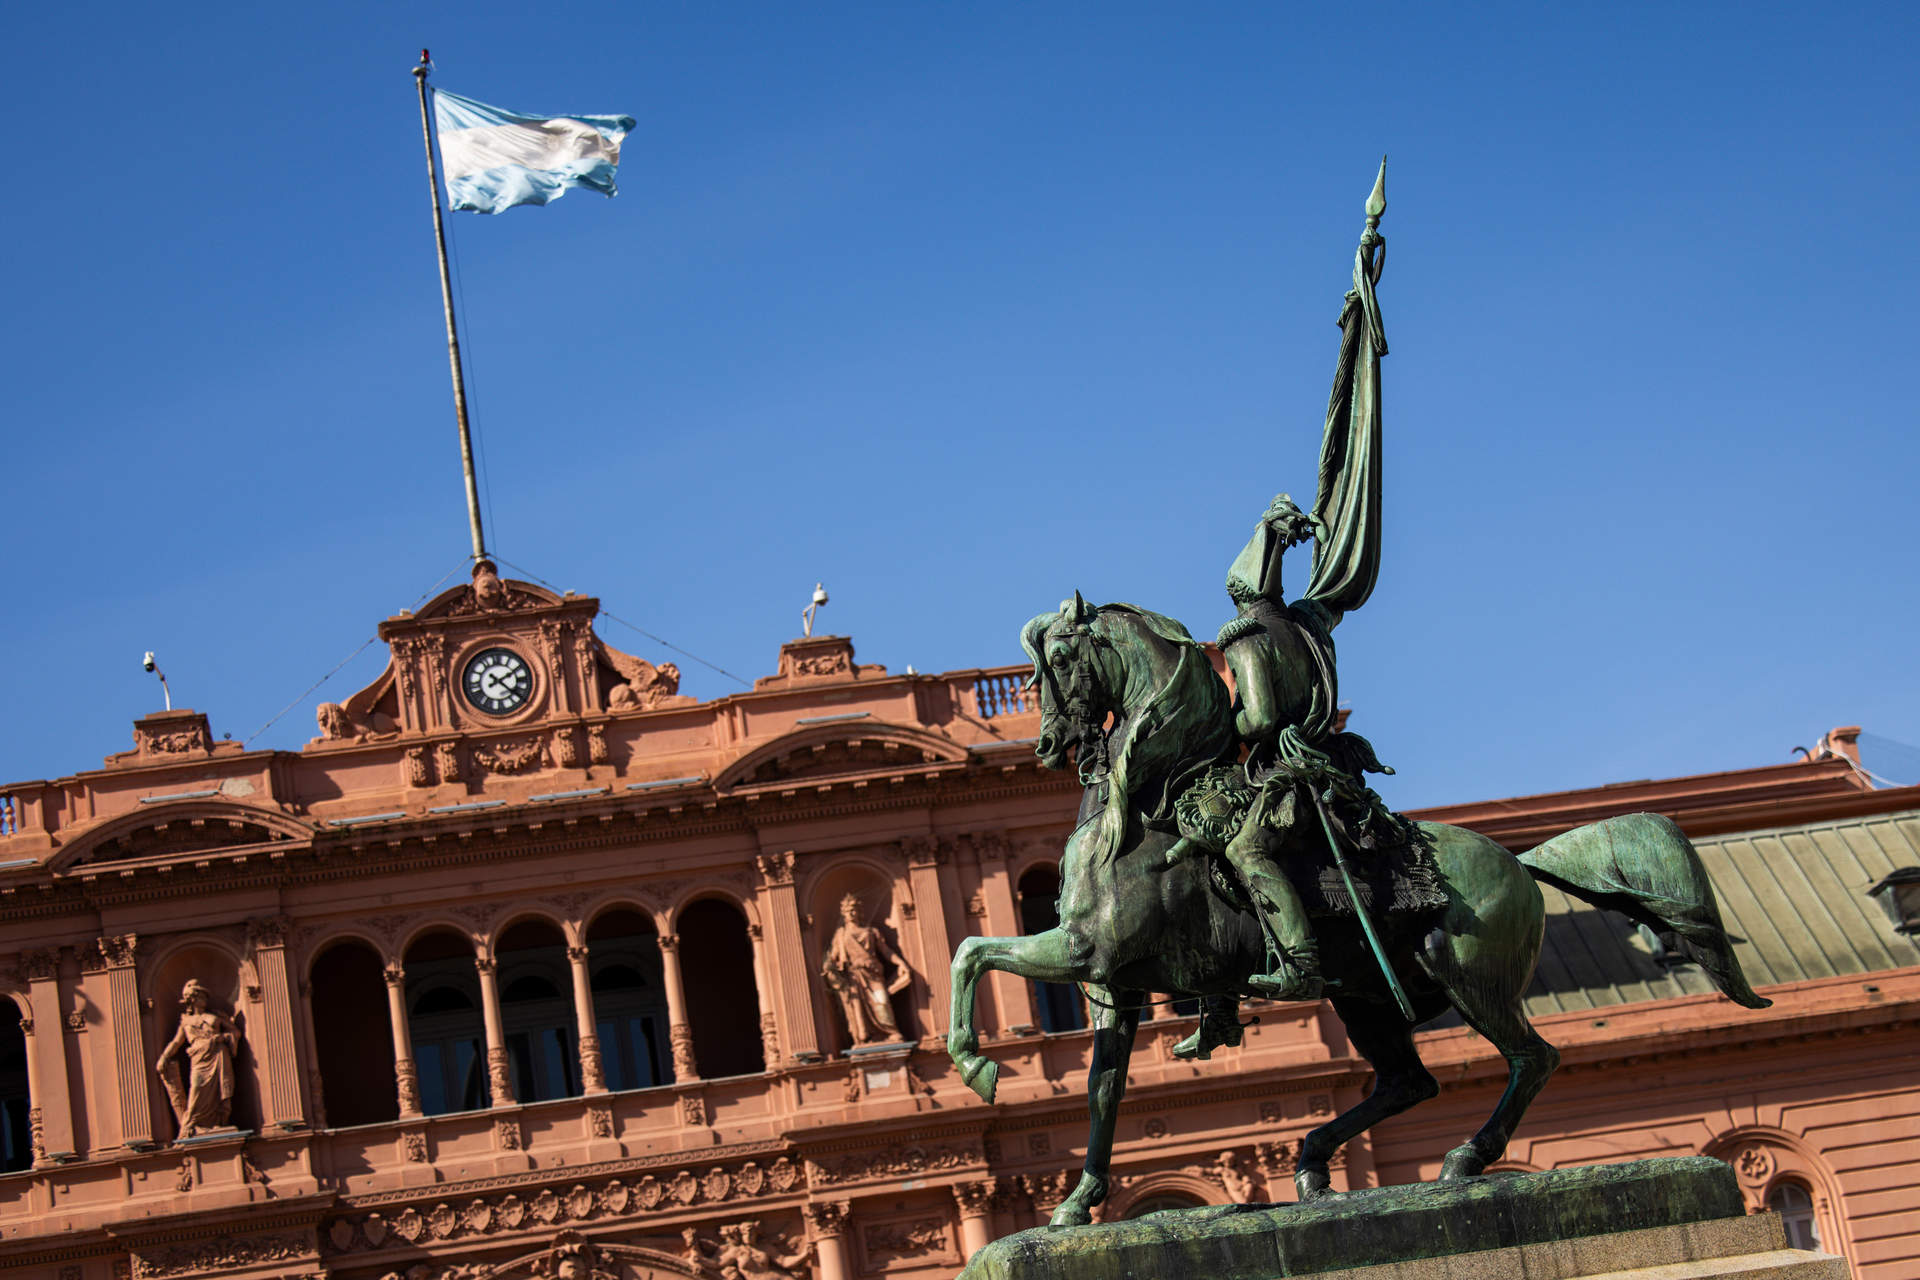 La inflación en Argentina cae en febrero al 13,2% mensual pero escala al 276,2% interanual